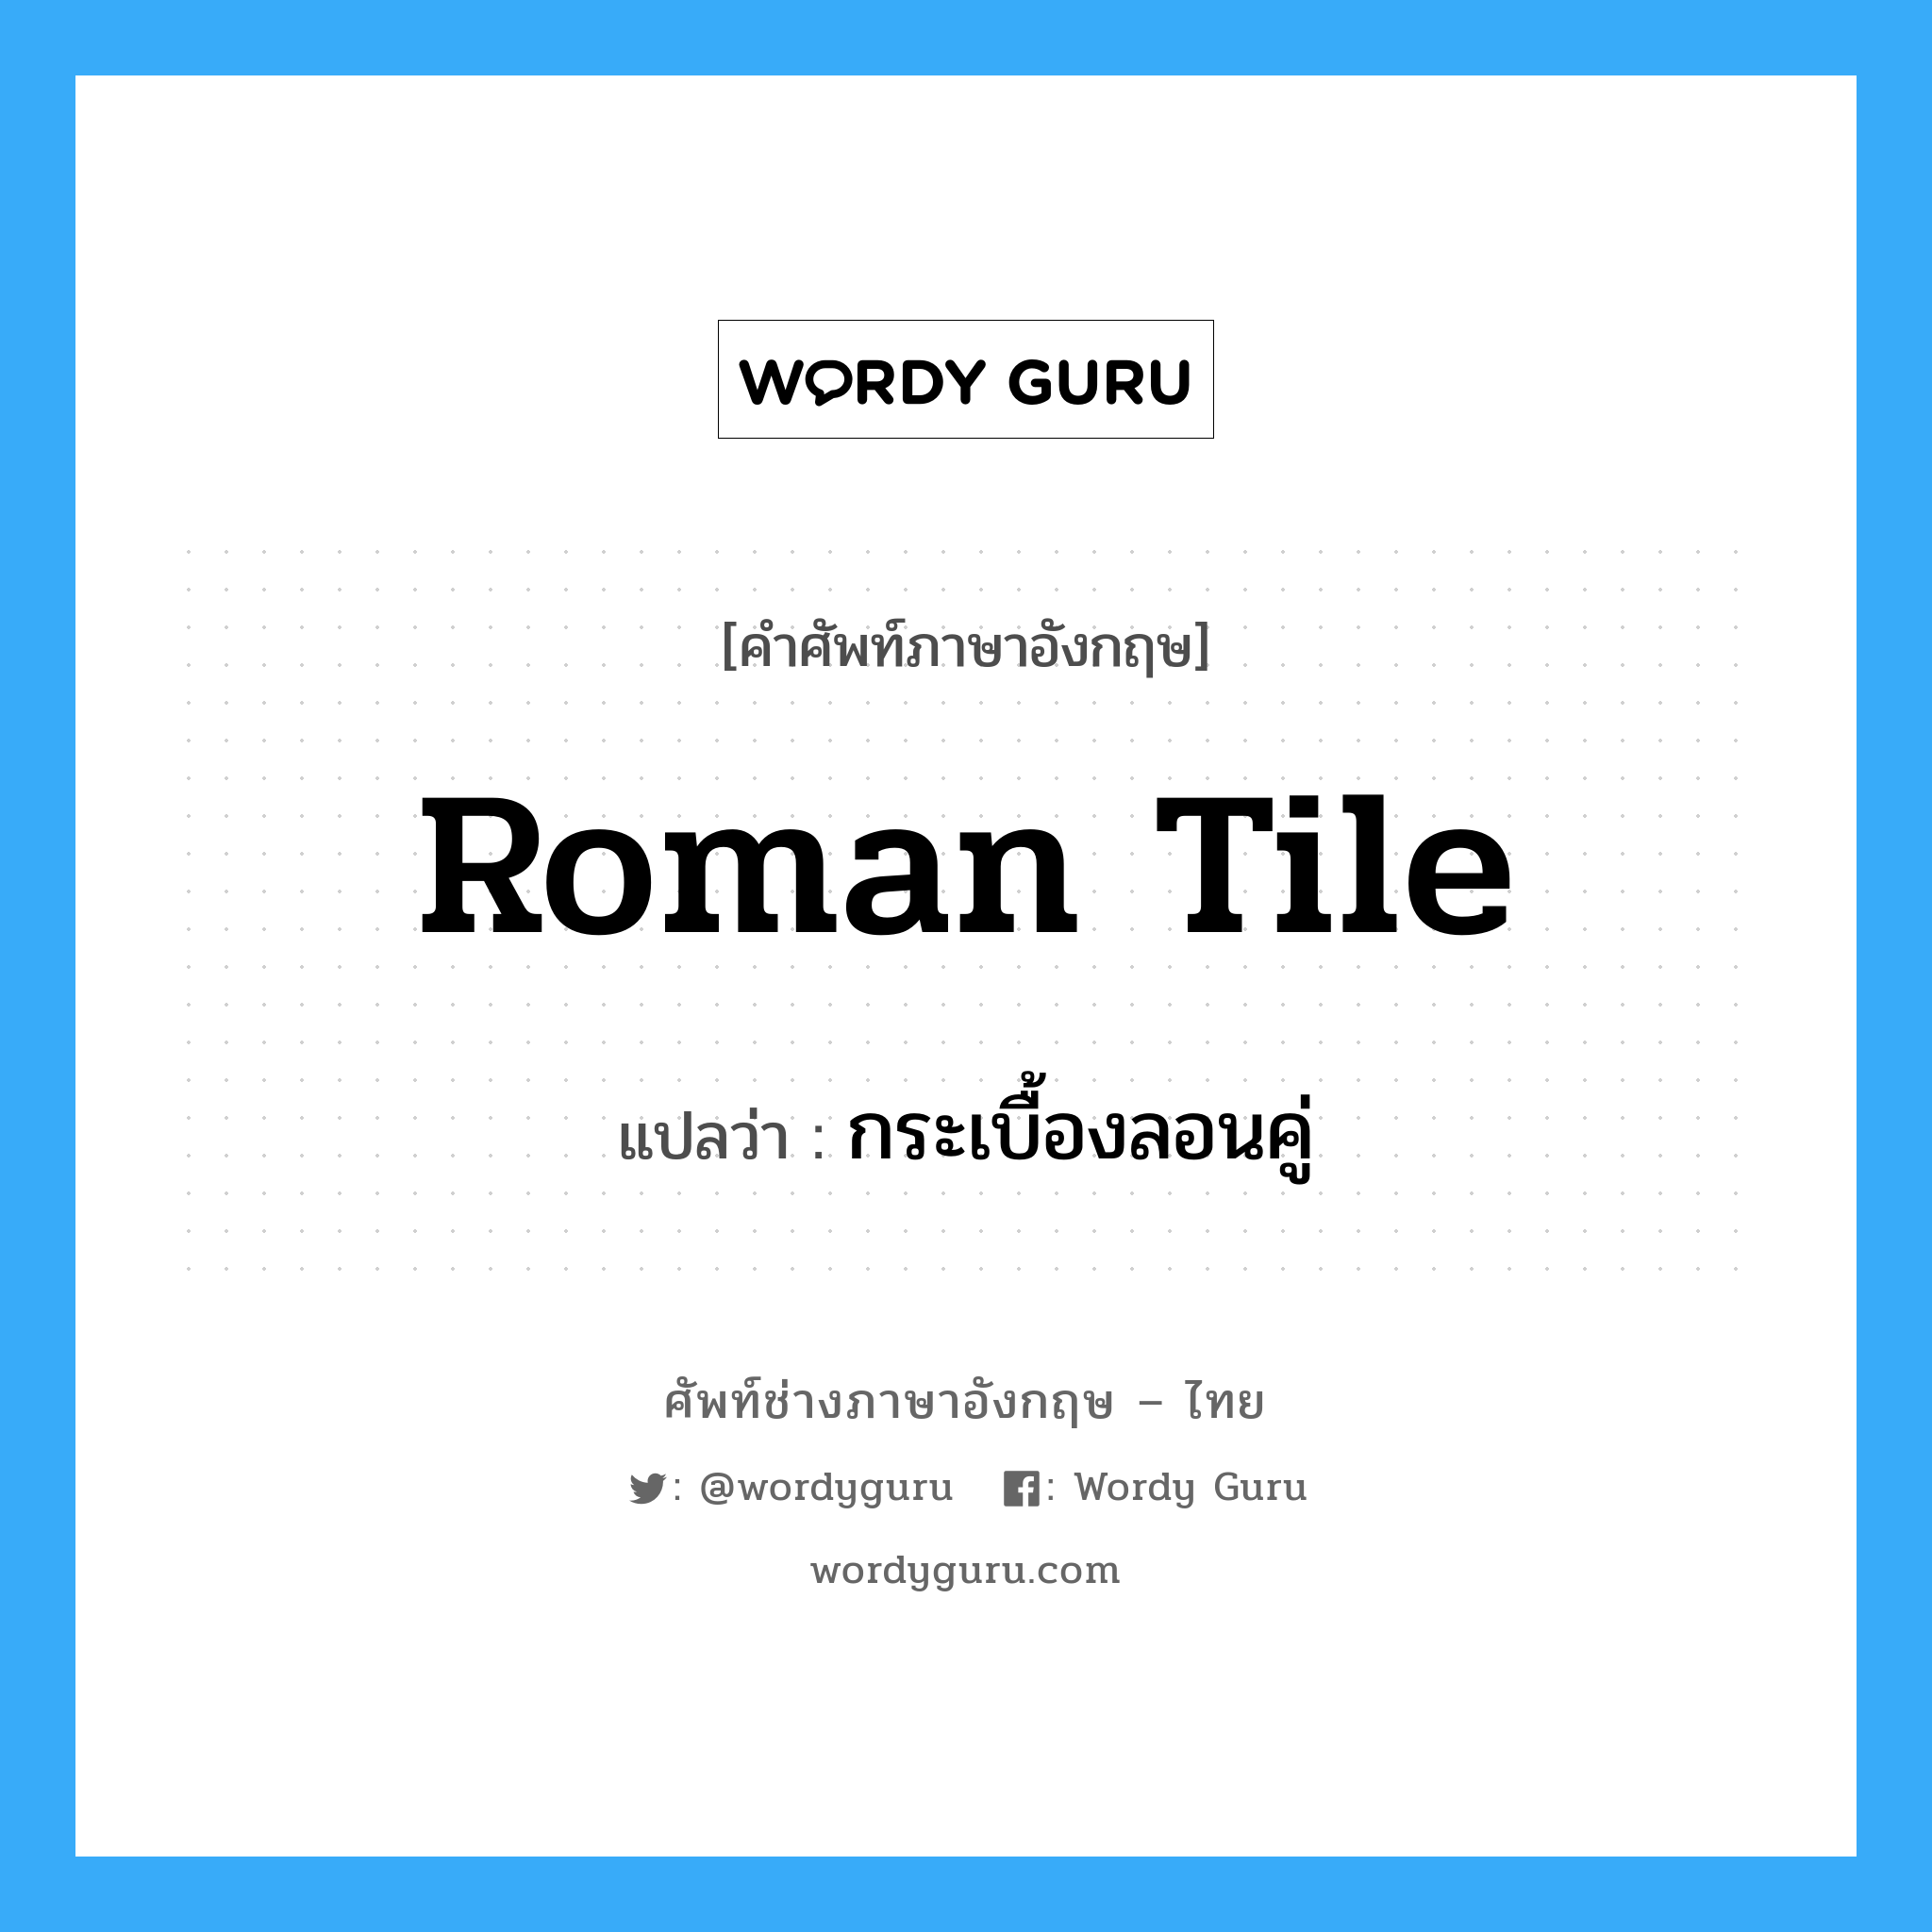 Roman tile แปลว่า?, คำศัพท์ช่างภาษาอังกฤษ - ไทย Roman tile คำศัพท์ภาษาอังกฤษ Roman tile แปลว่า กระเบื้องลอนคู่